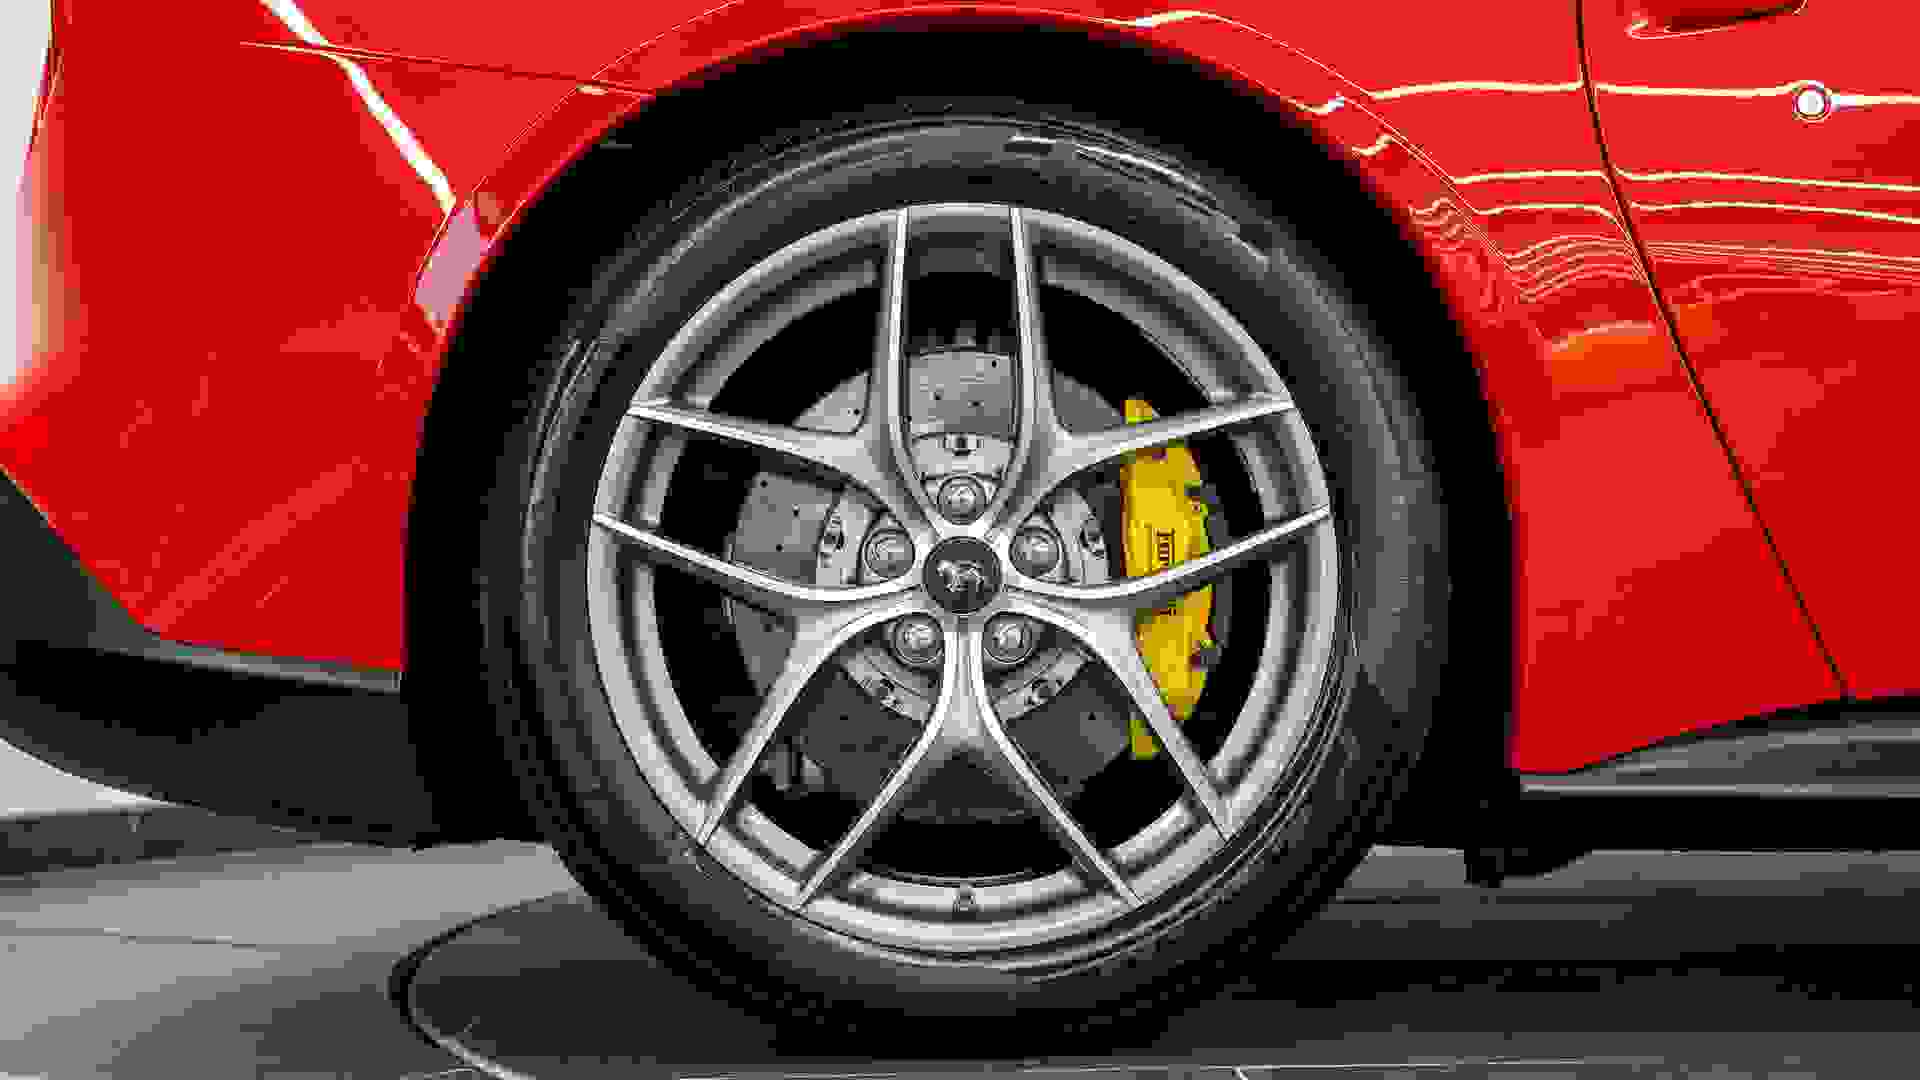 Ferrari F12 Photo 3532382b-7de0-4919-88e8-bdc4e6fef000.jpg